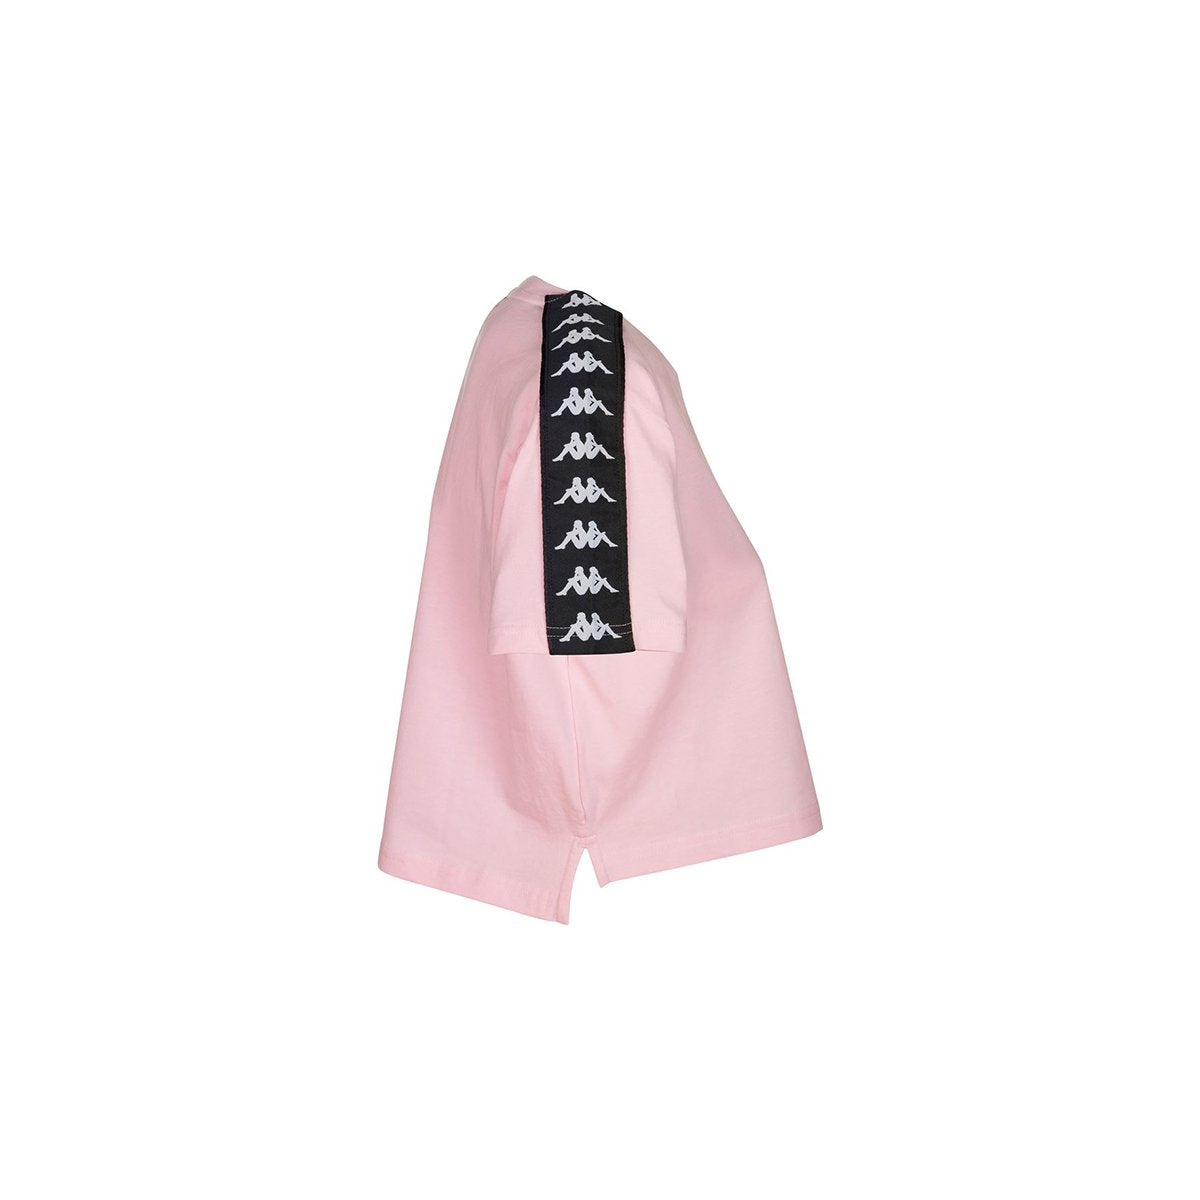 Camiseta Apua mujer rosa - Imagen 2